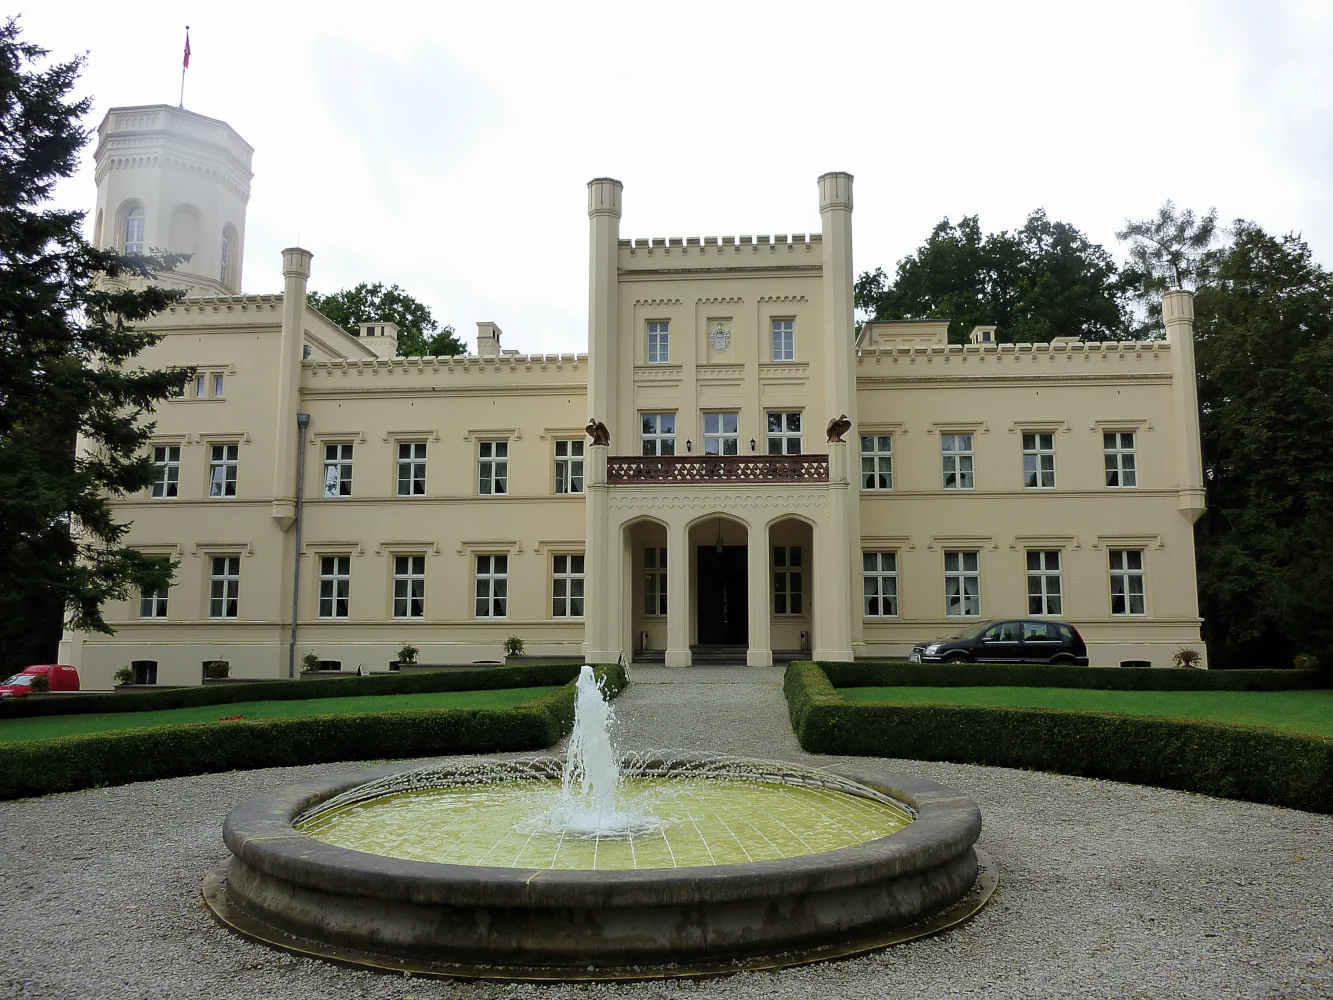 Pałac Mierzęcin